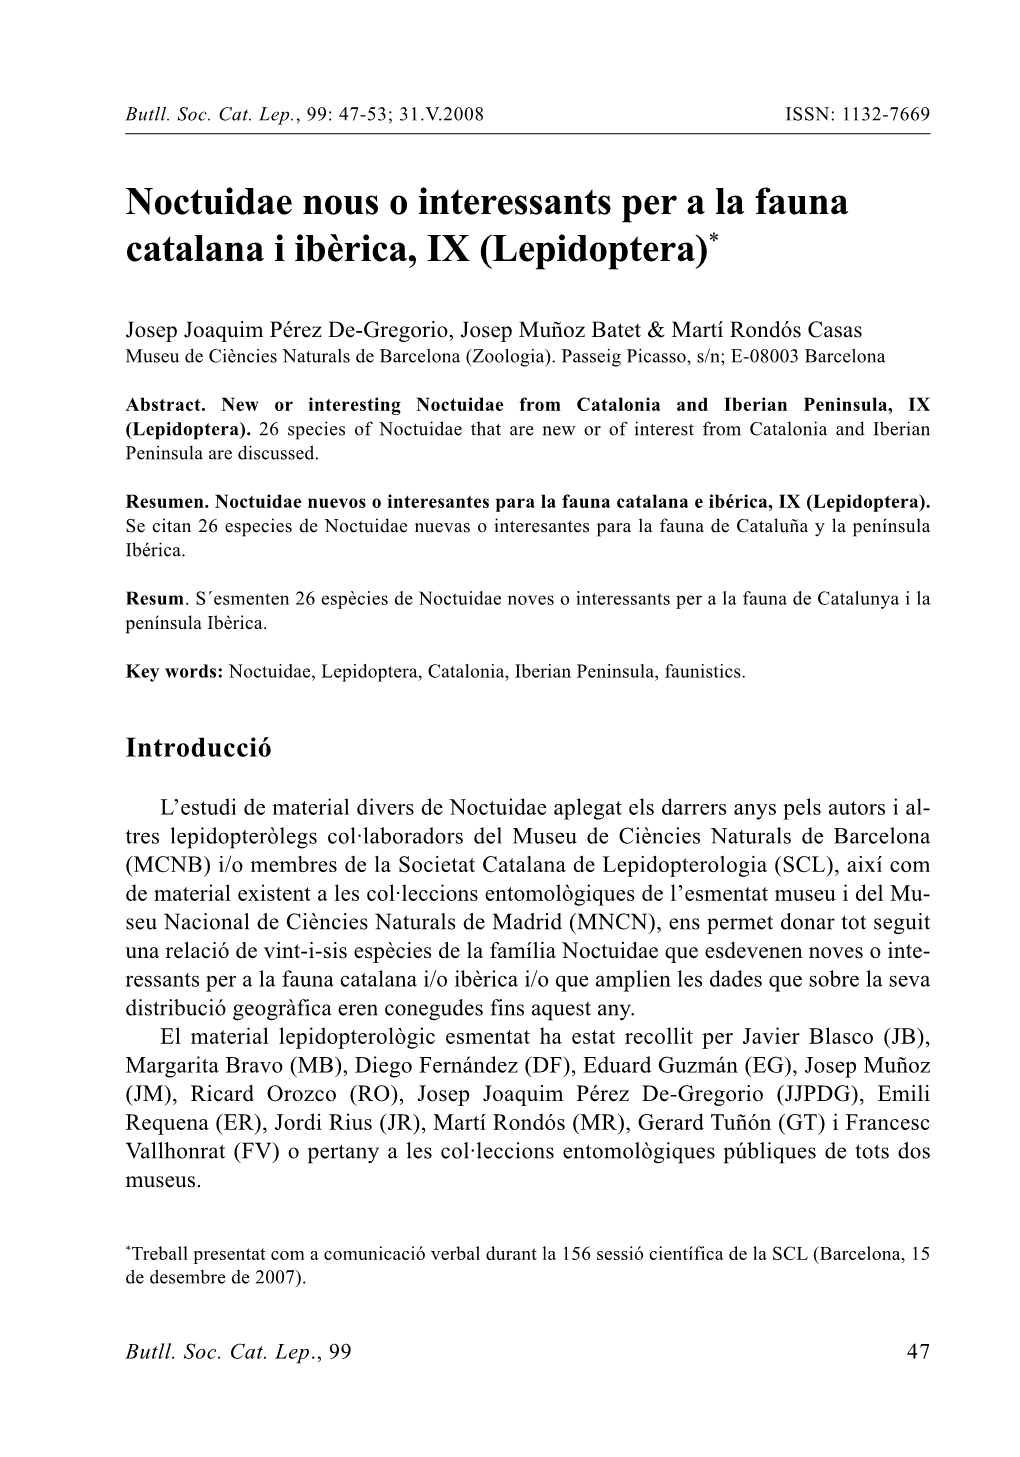 Noctuidae Nous O Interessants Per a La Fauna Catalana I Ibèrica, IX (Lepidoptera)*